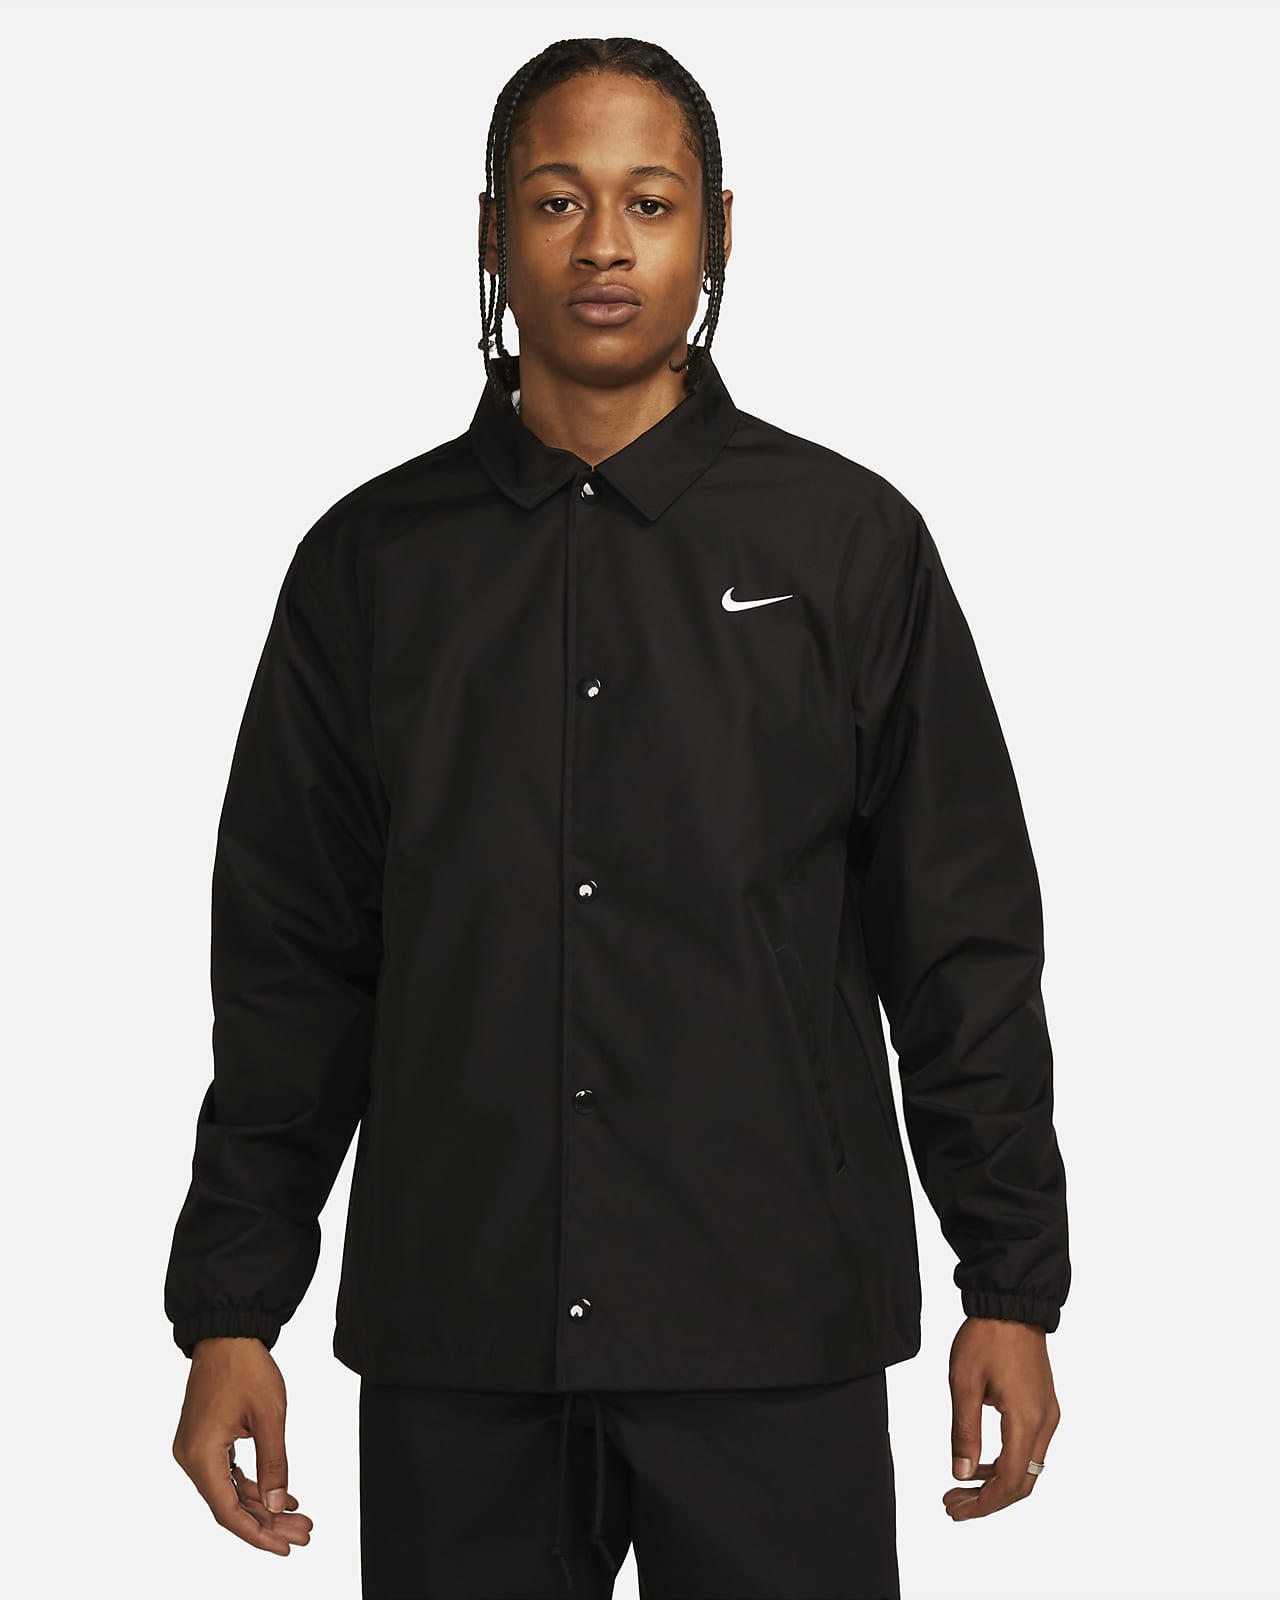 creatief stel je voor Koel Nike Authentics Men's Lined Coaches Jacket. Nike.com